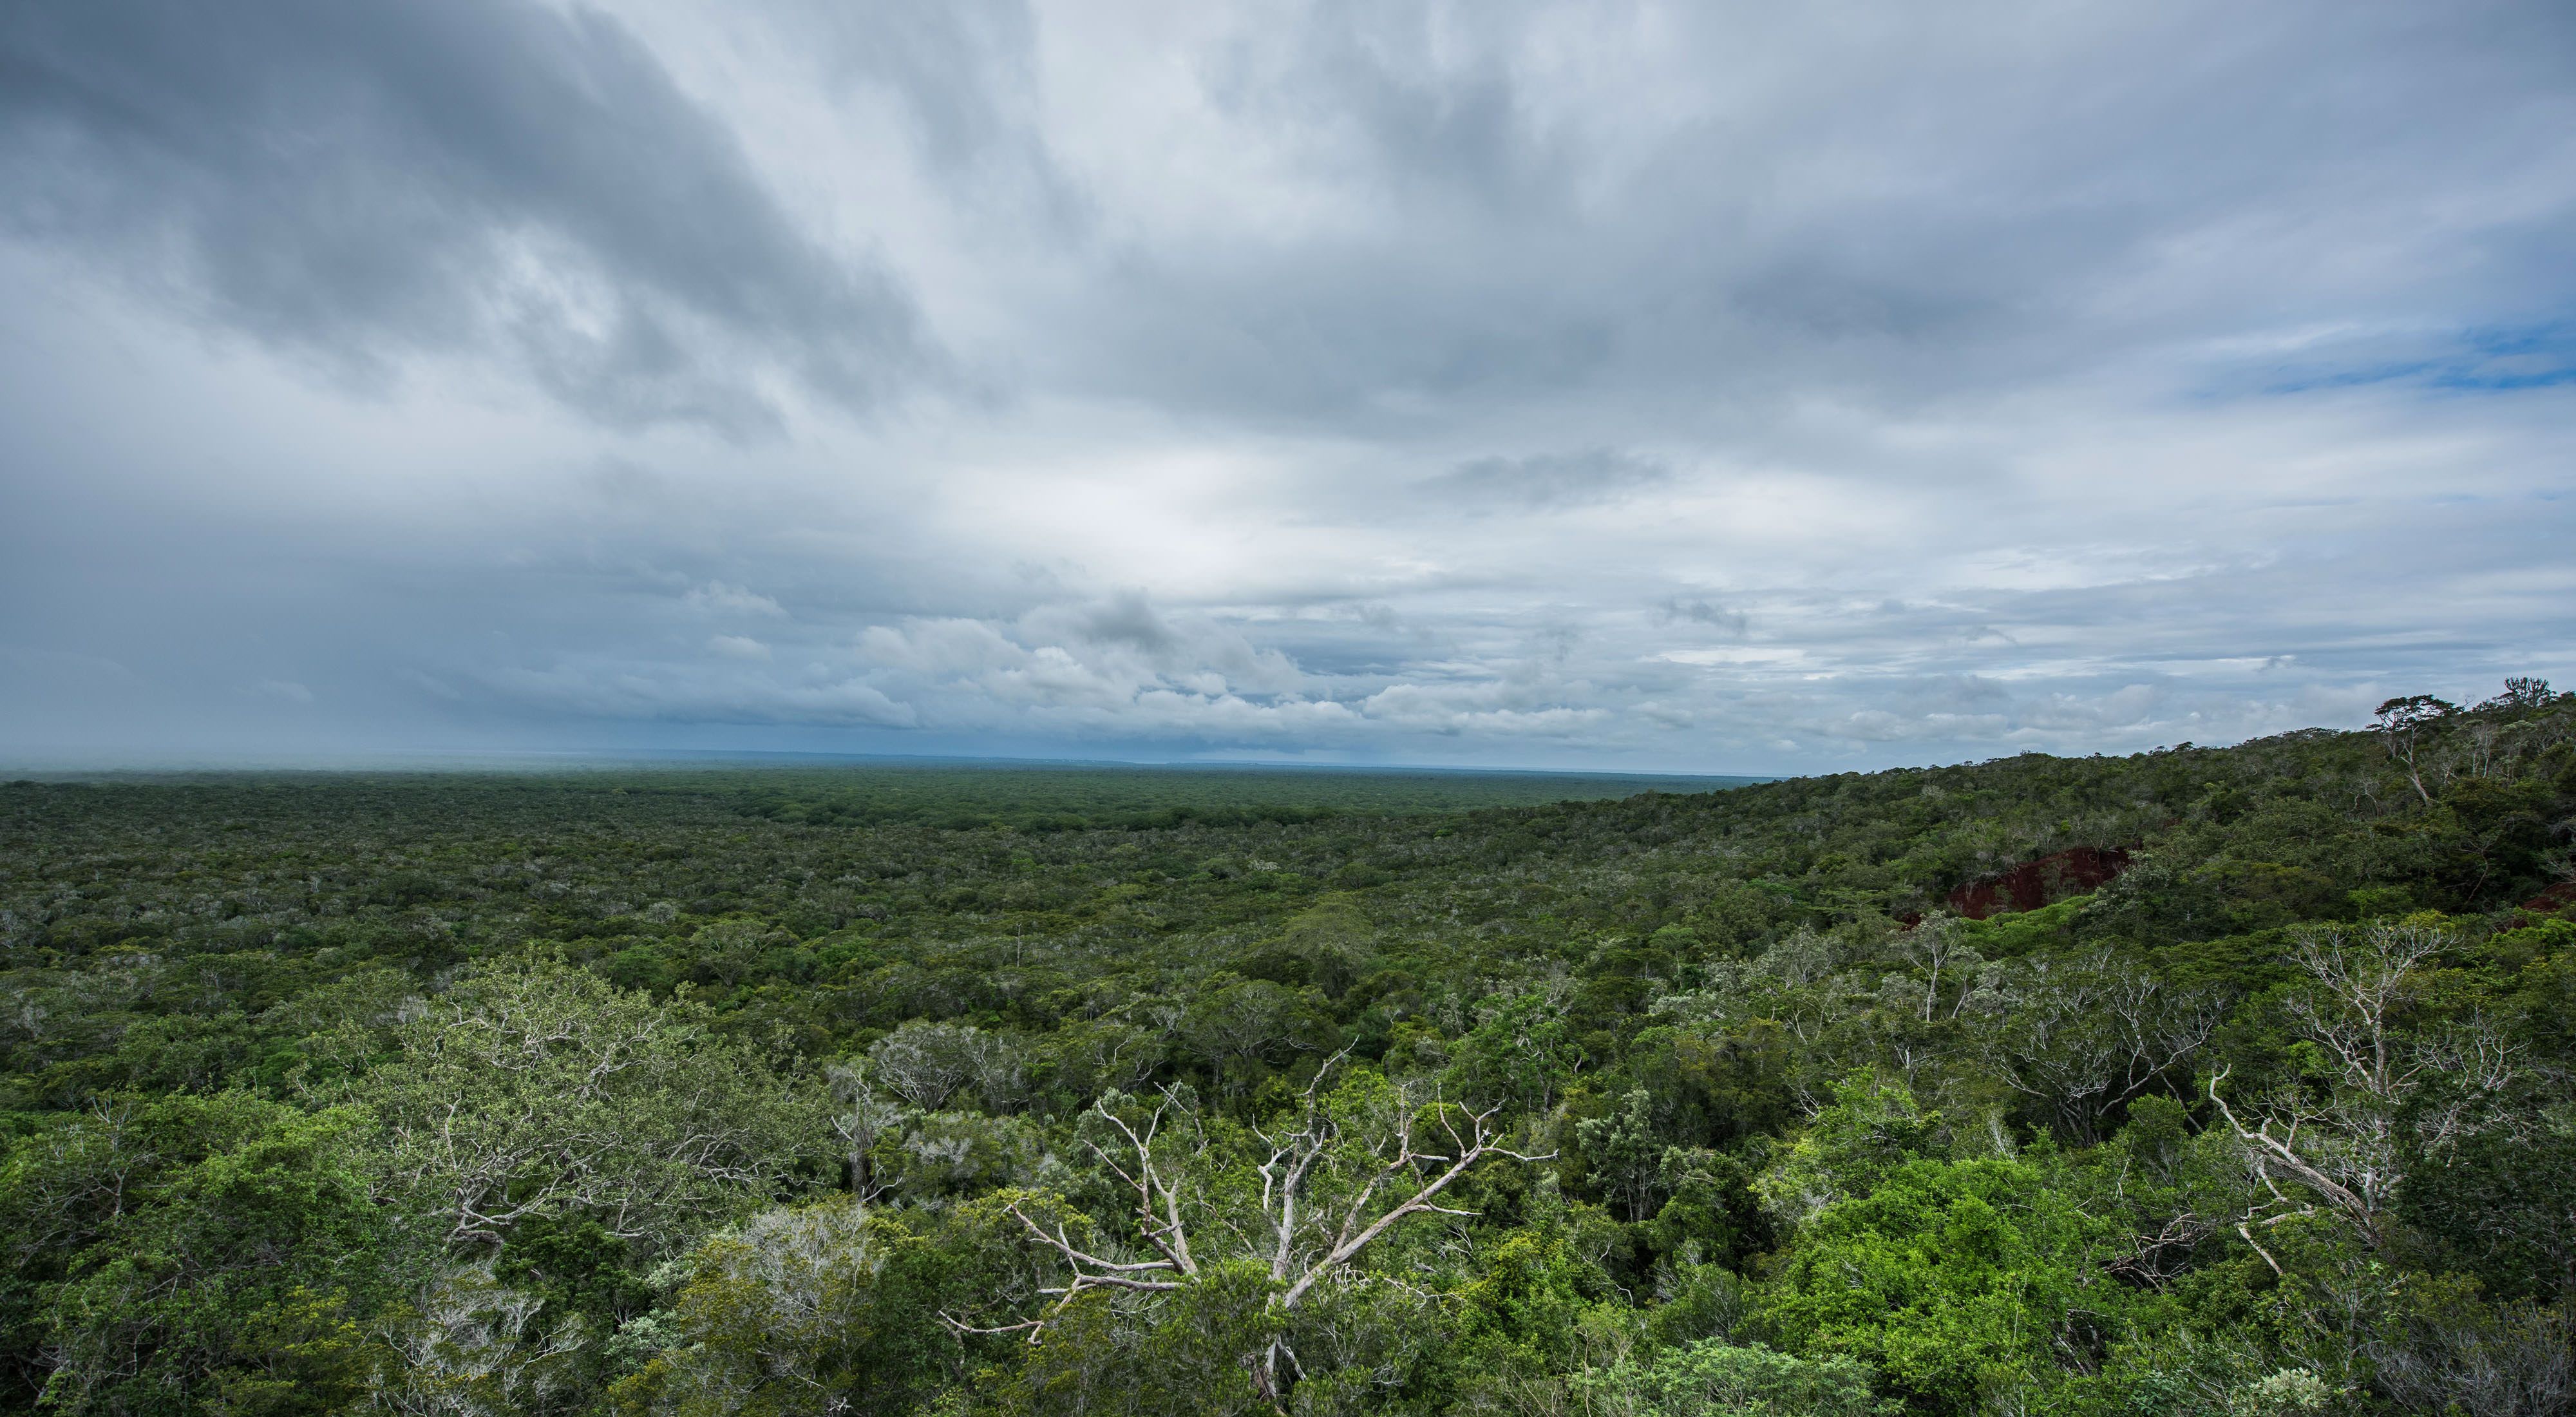 Arabuko forest, Kenya.